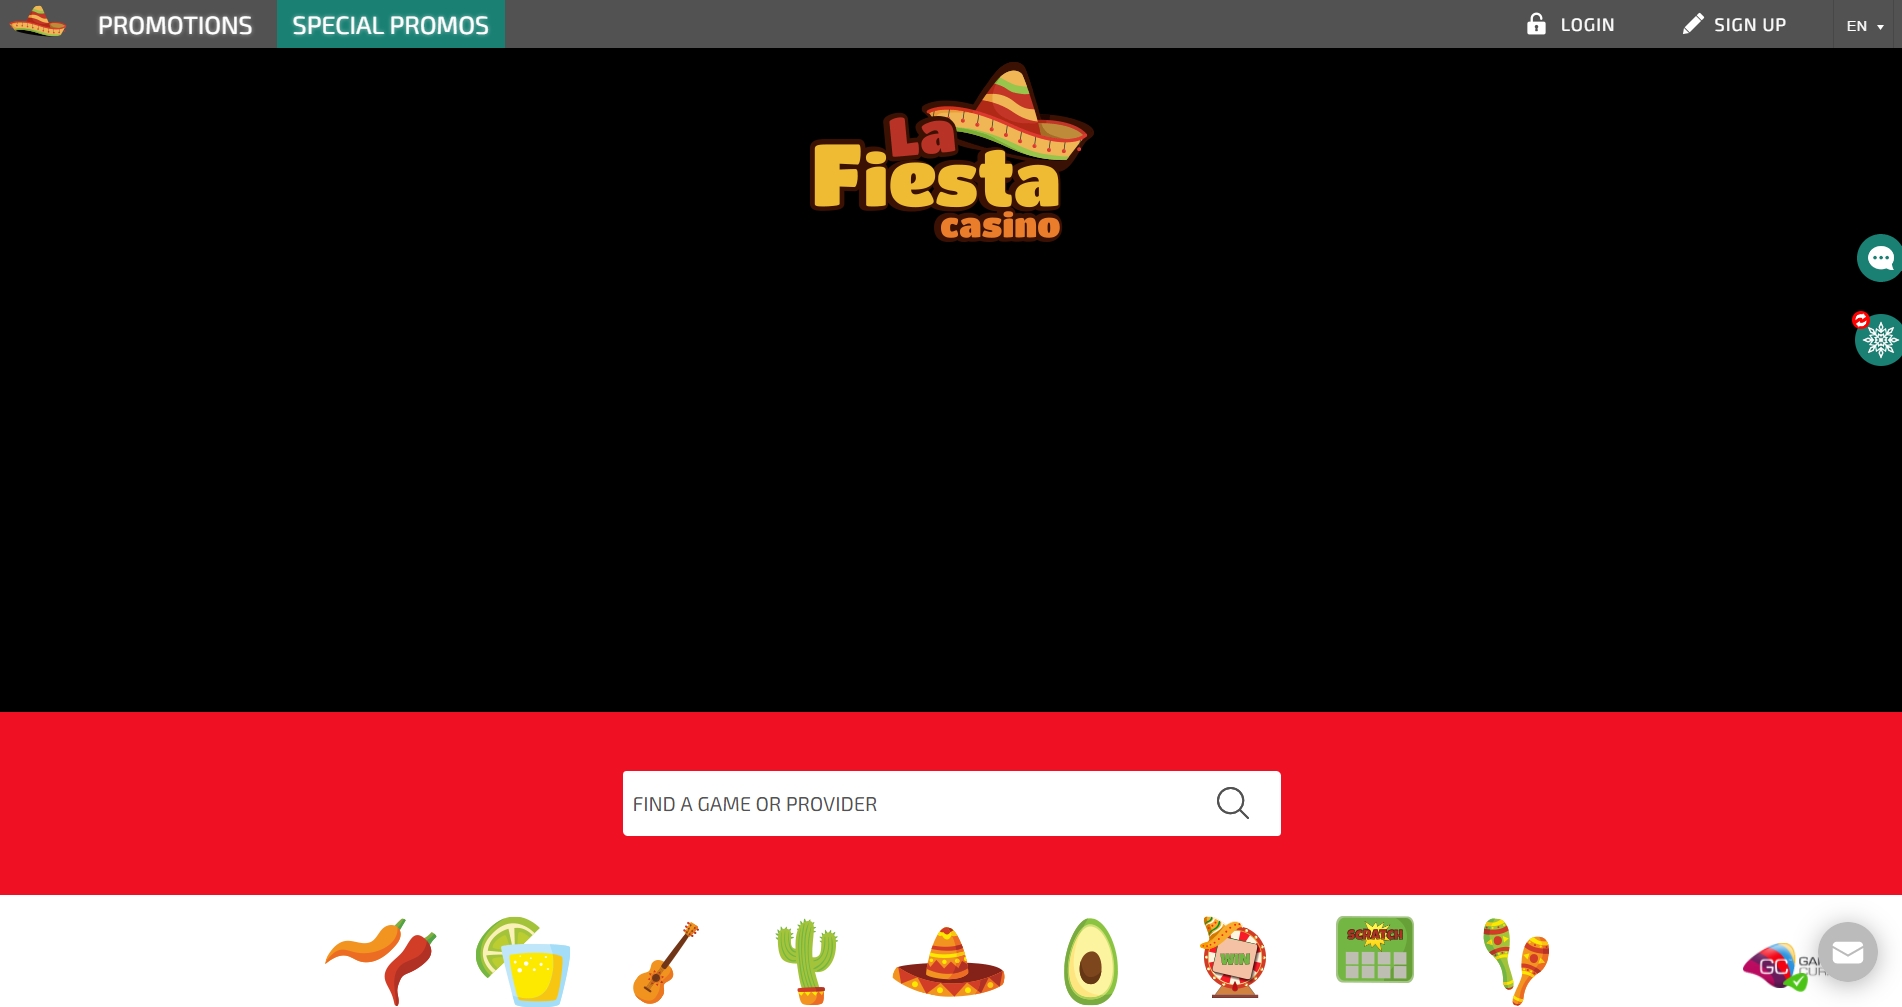 Casino La Fiesta Review